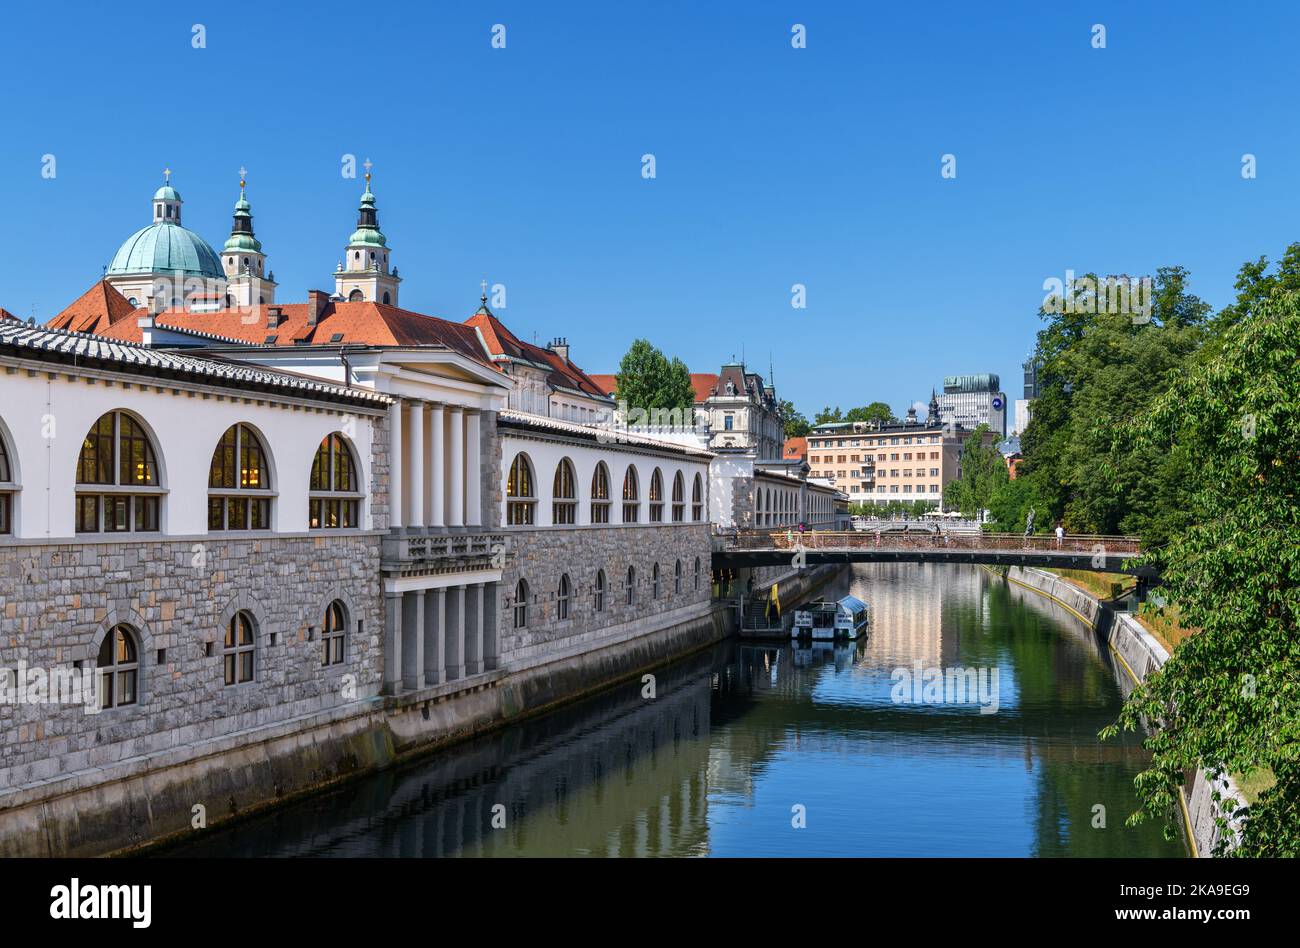 The Ljubljanica River from the Dragon Bridge (Zmajski most) in the old town, Ljubljana, Slovenia Stock Photo